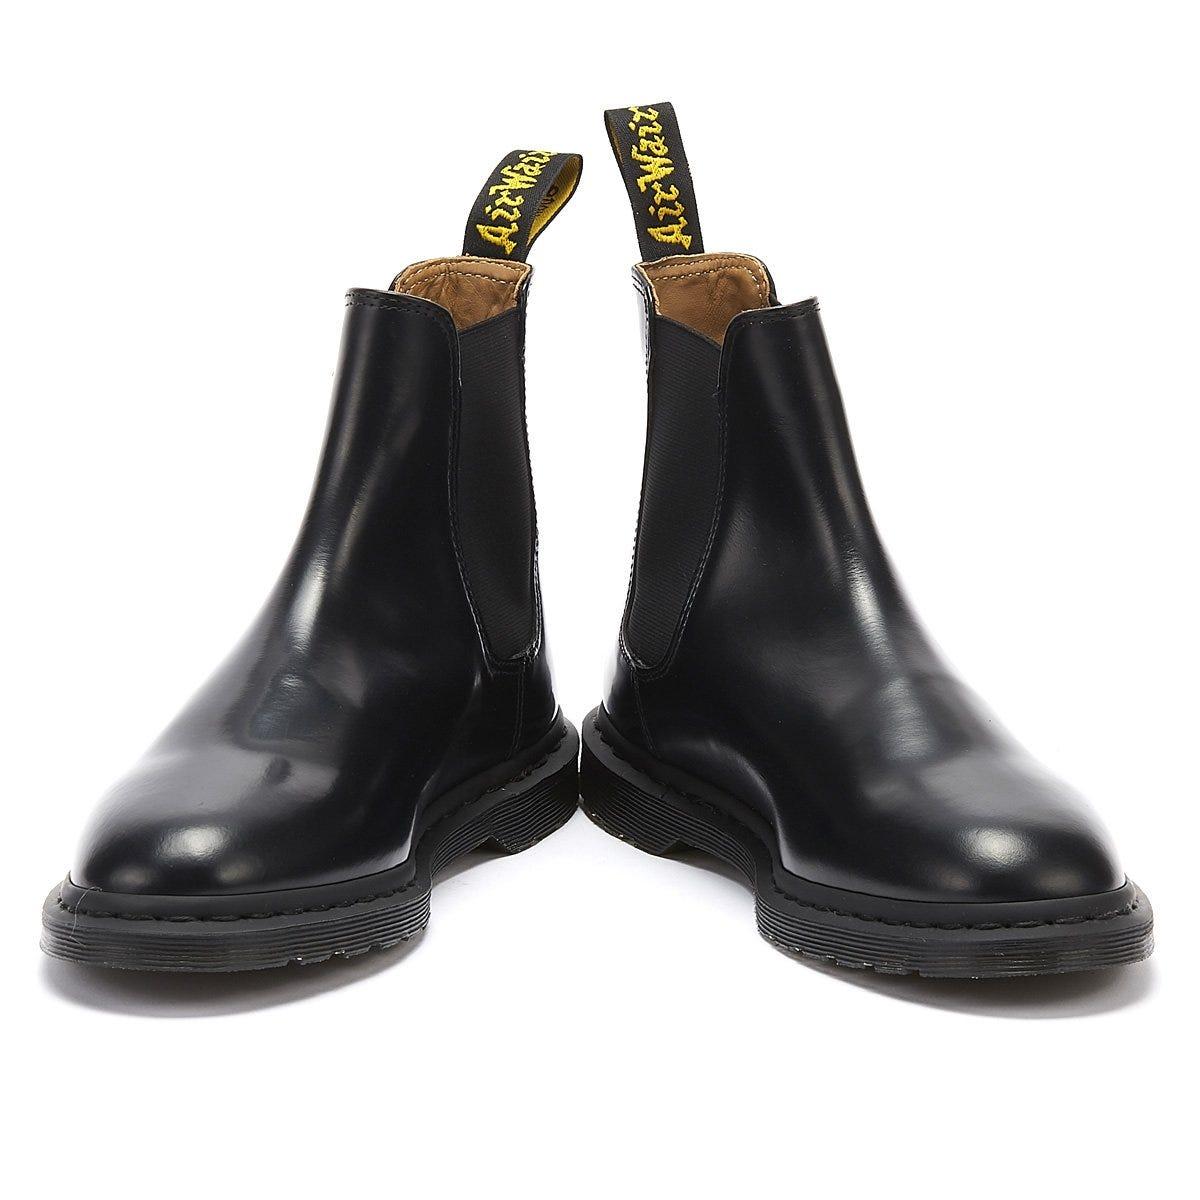 dr martens graeme chelsea boots in black polished smooth,stormrage.com